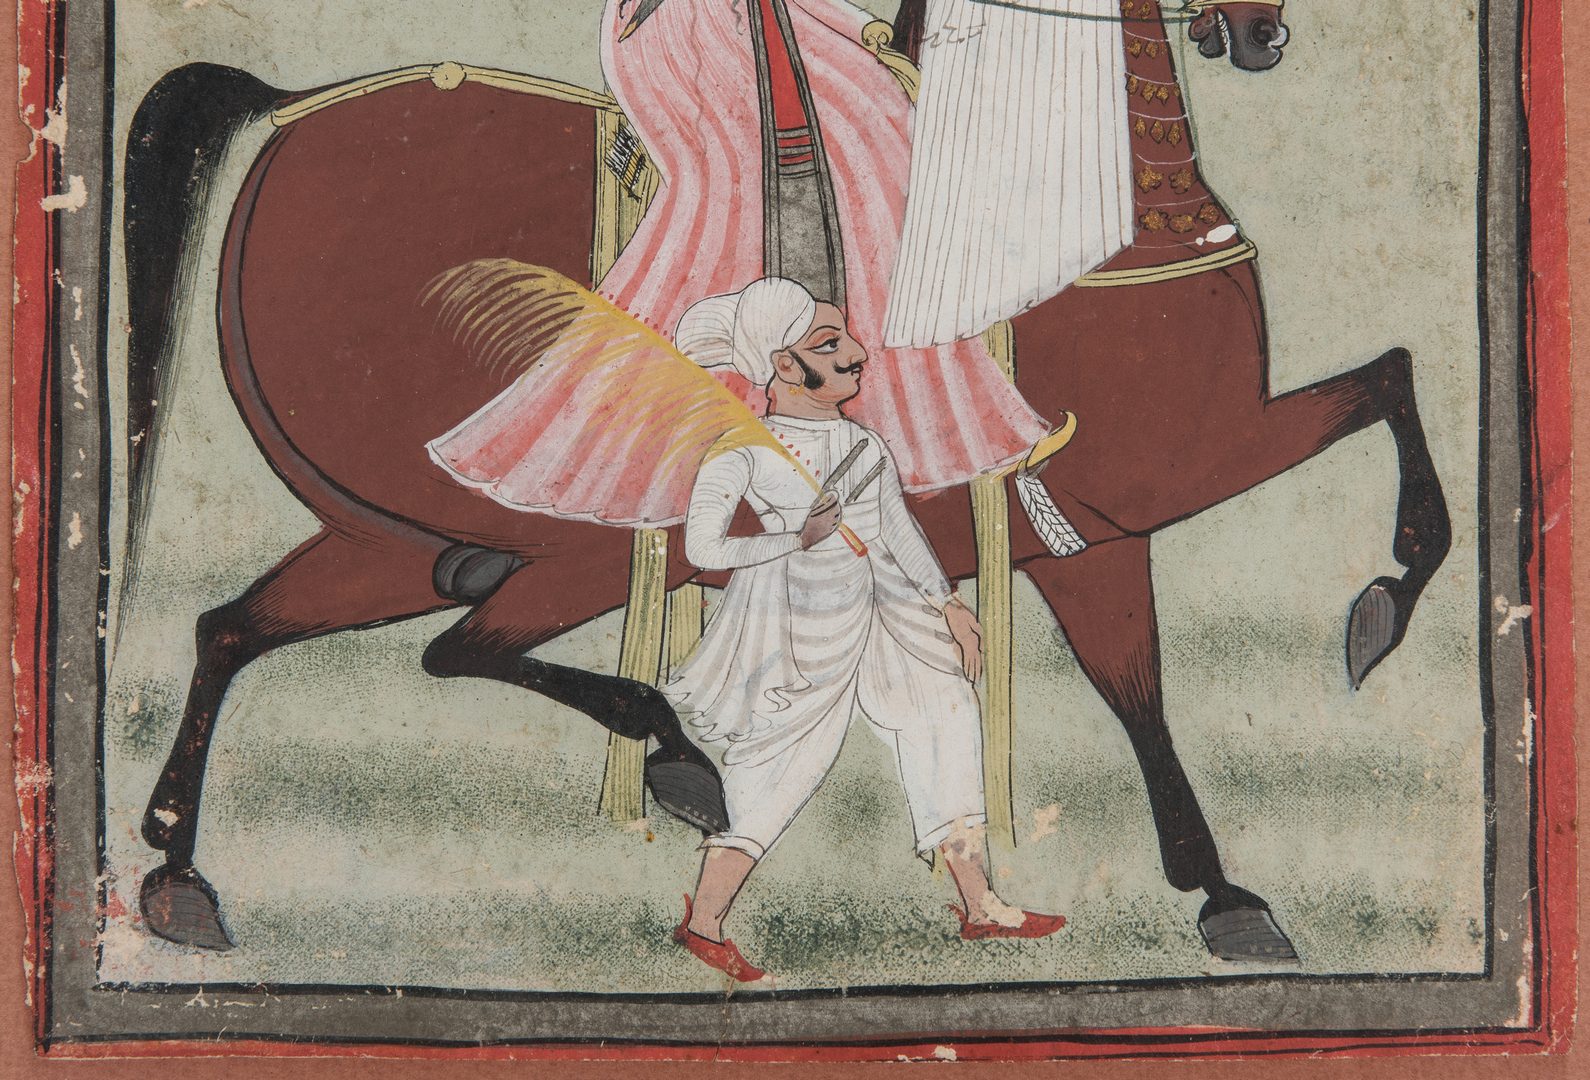 Lot 239: 2 Indian Watercolor Paintings, Mughal Noblemen